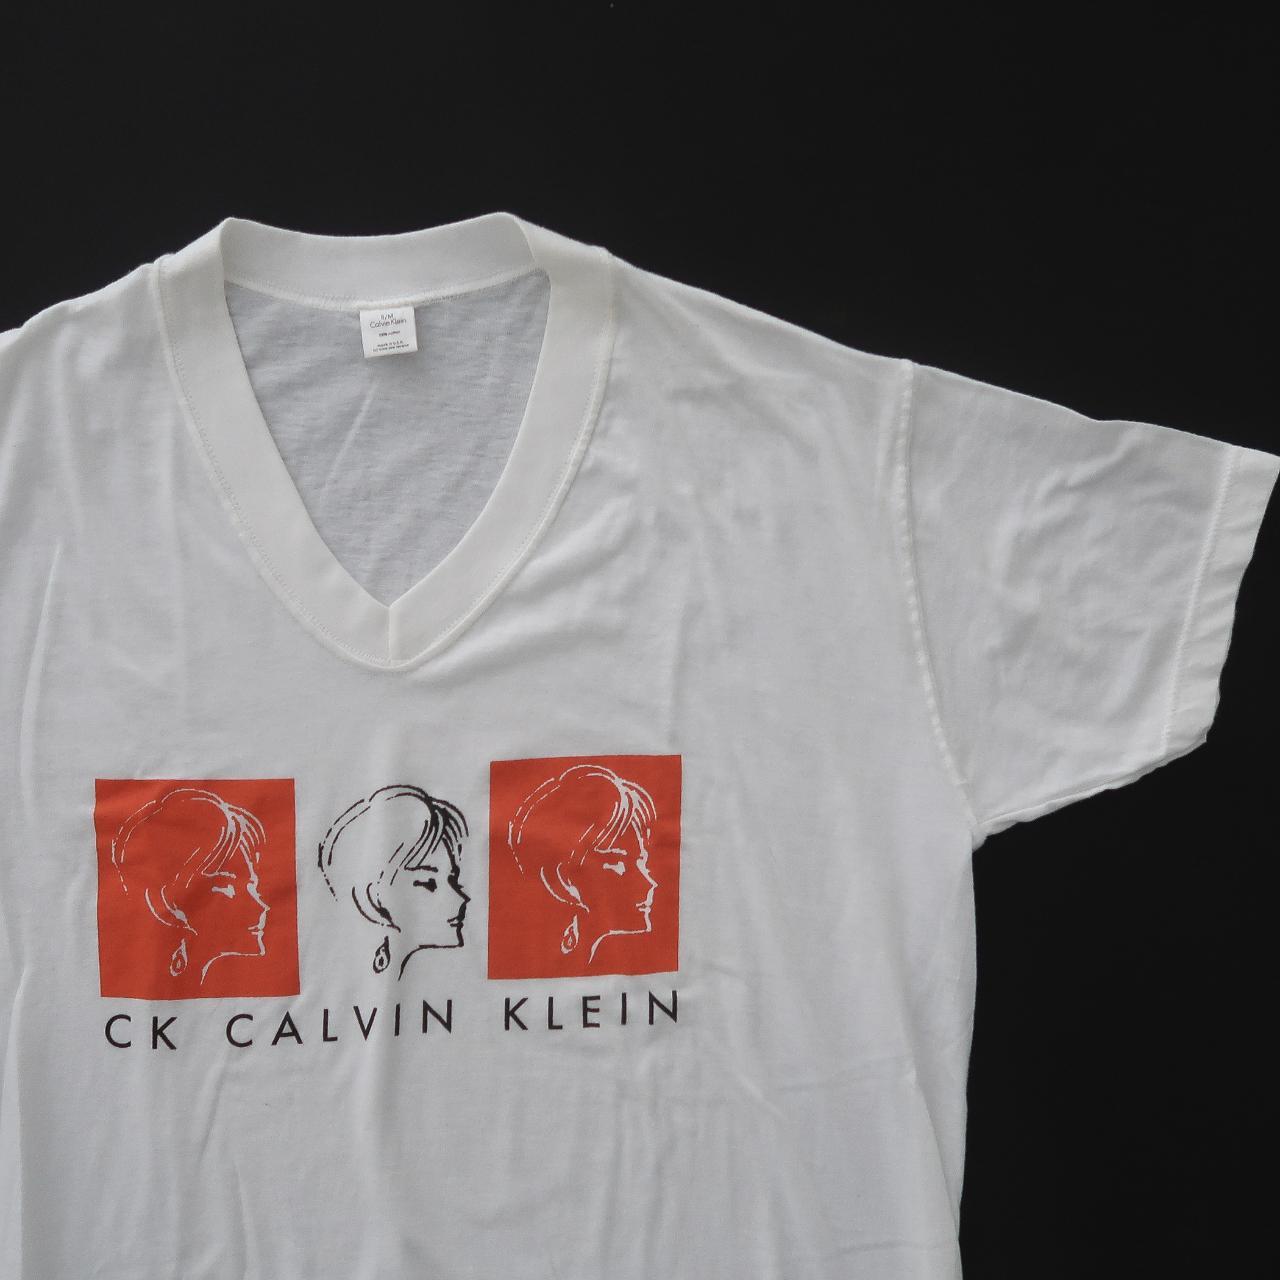 Vintage 90s Calvin Klein retro Depop sleep shirt. - Rad